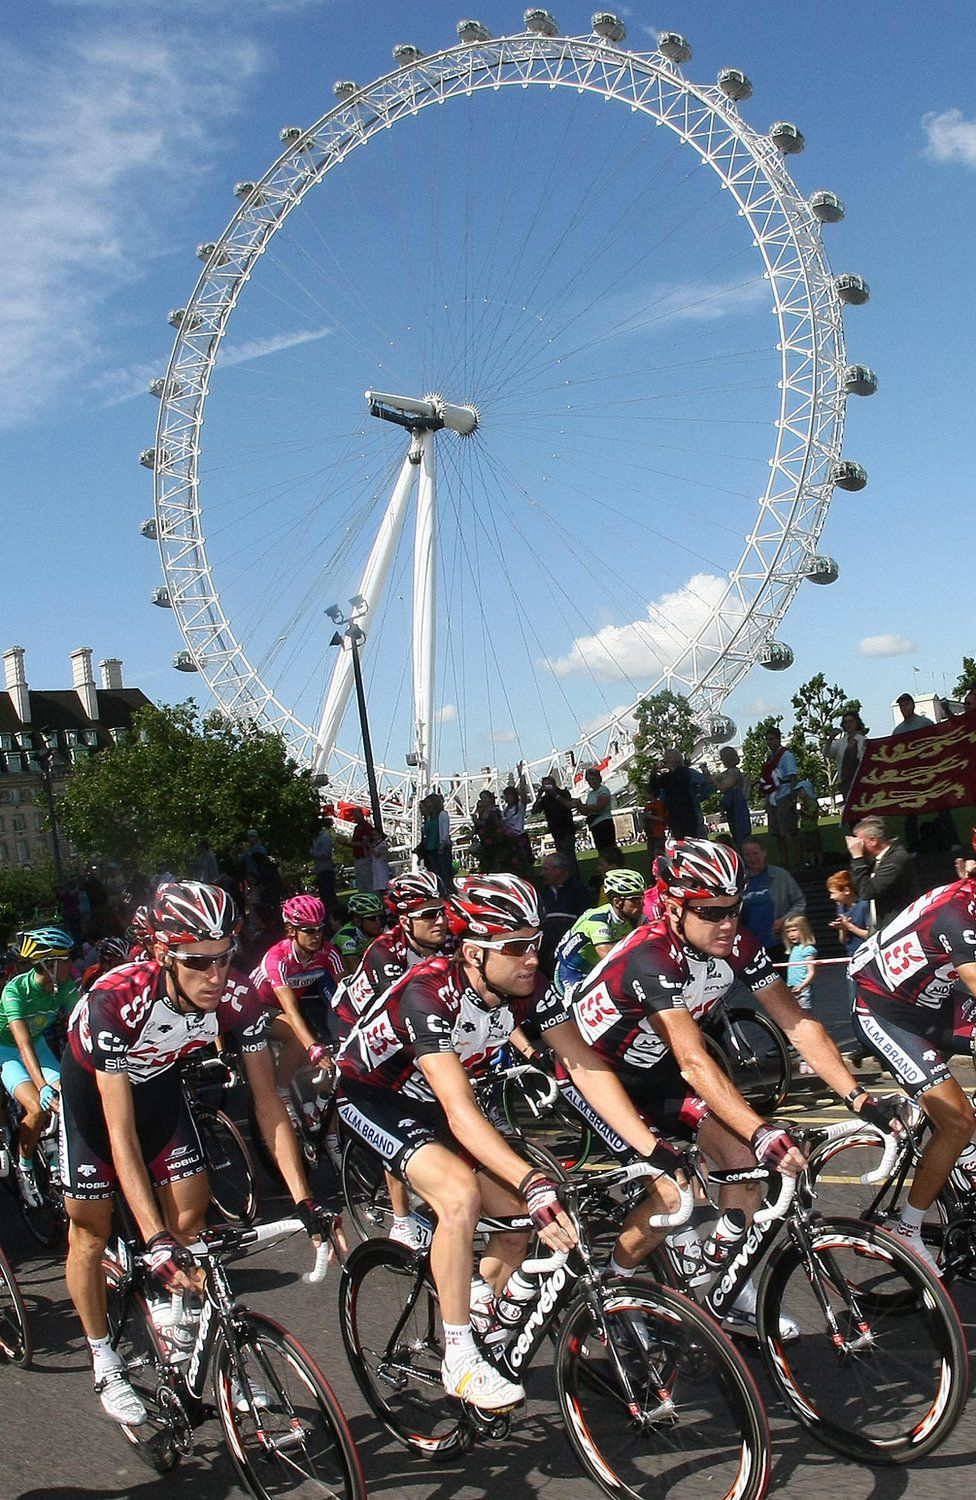 Tour de France in London in 2007